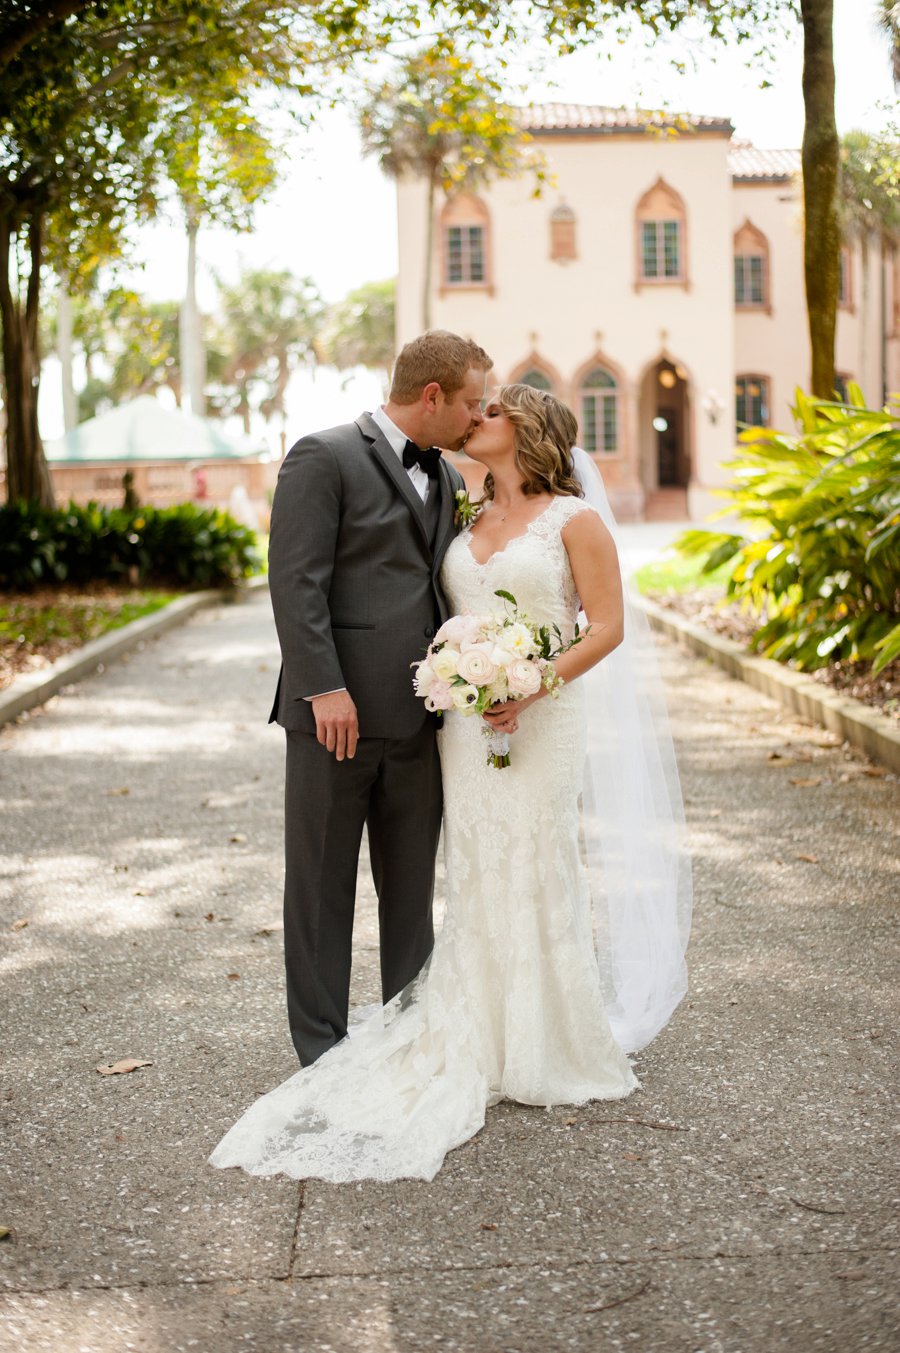 A Garden Inspired Blush Florida Wedding via TheELD.com